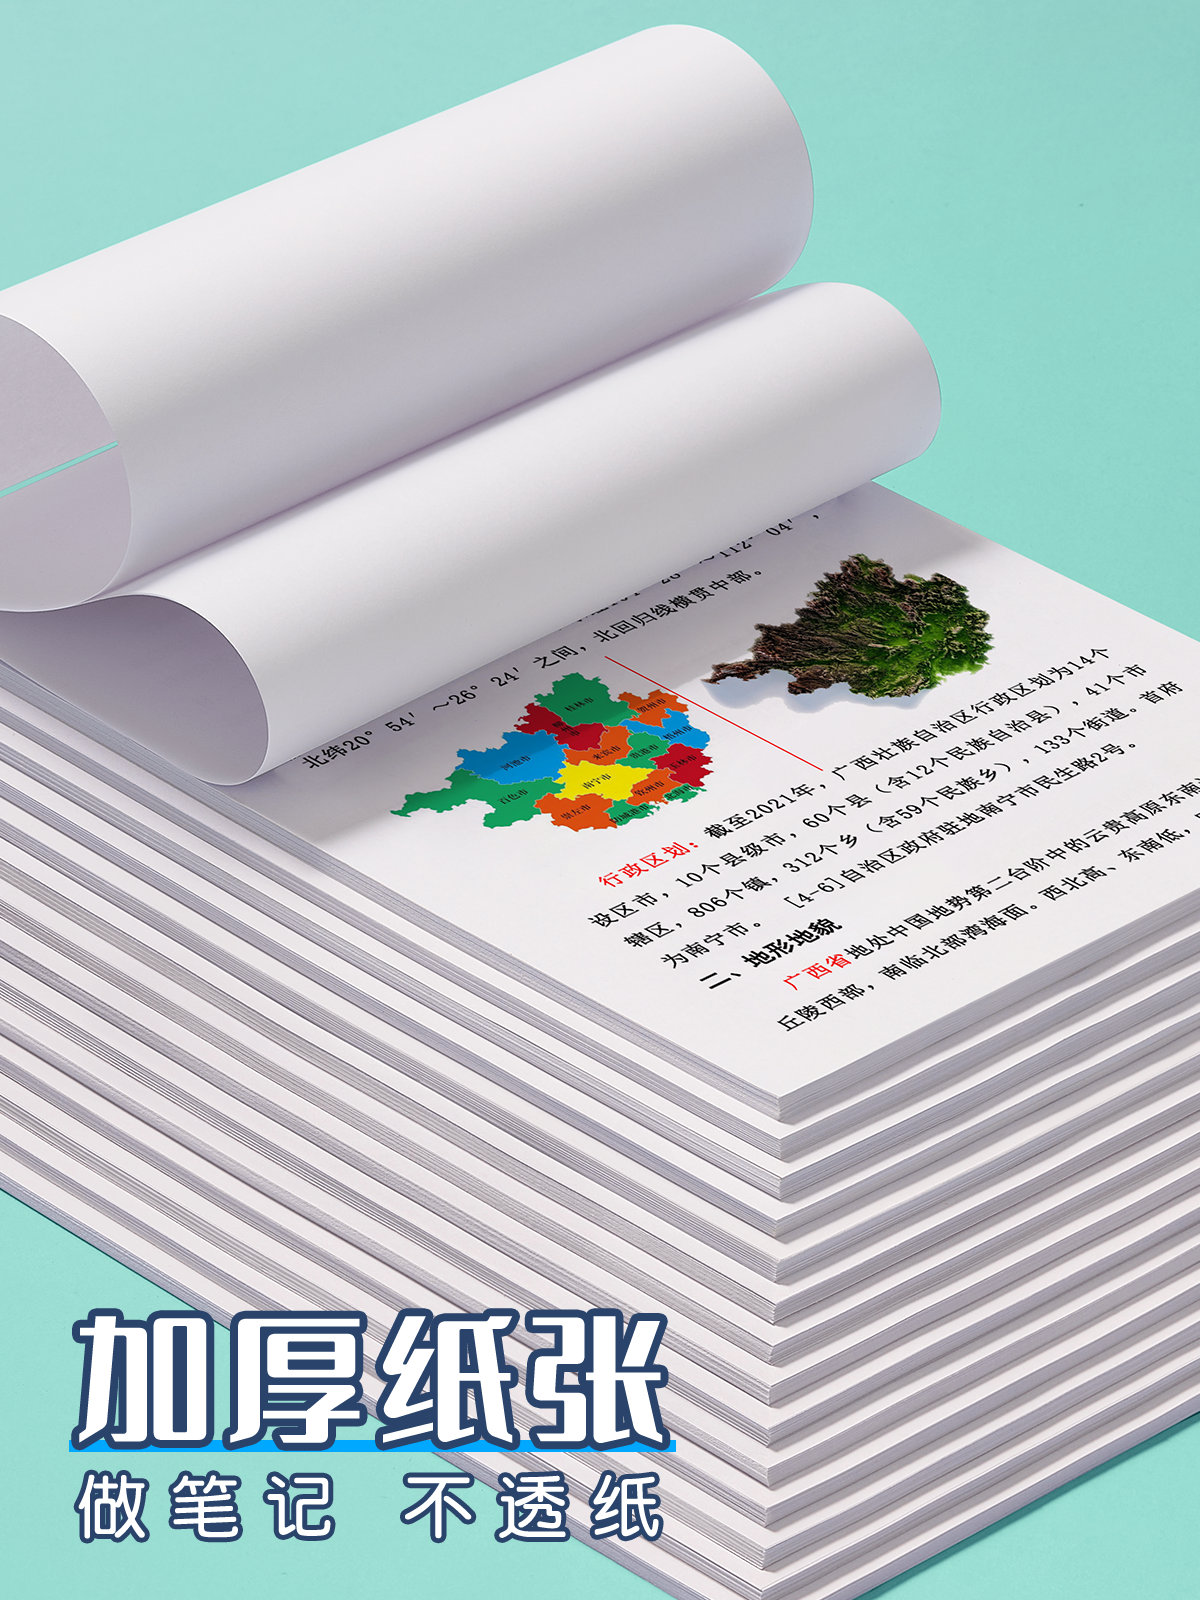 打印学生复习资料网上打印试卷文档装订成册复印彩色书籍印刷广西